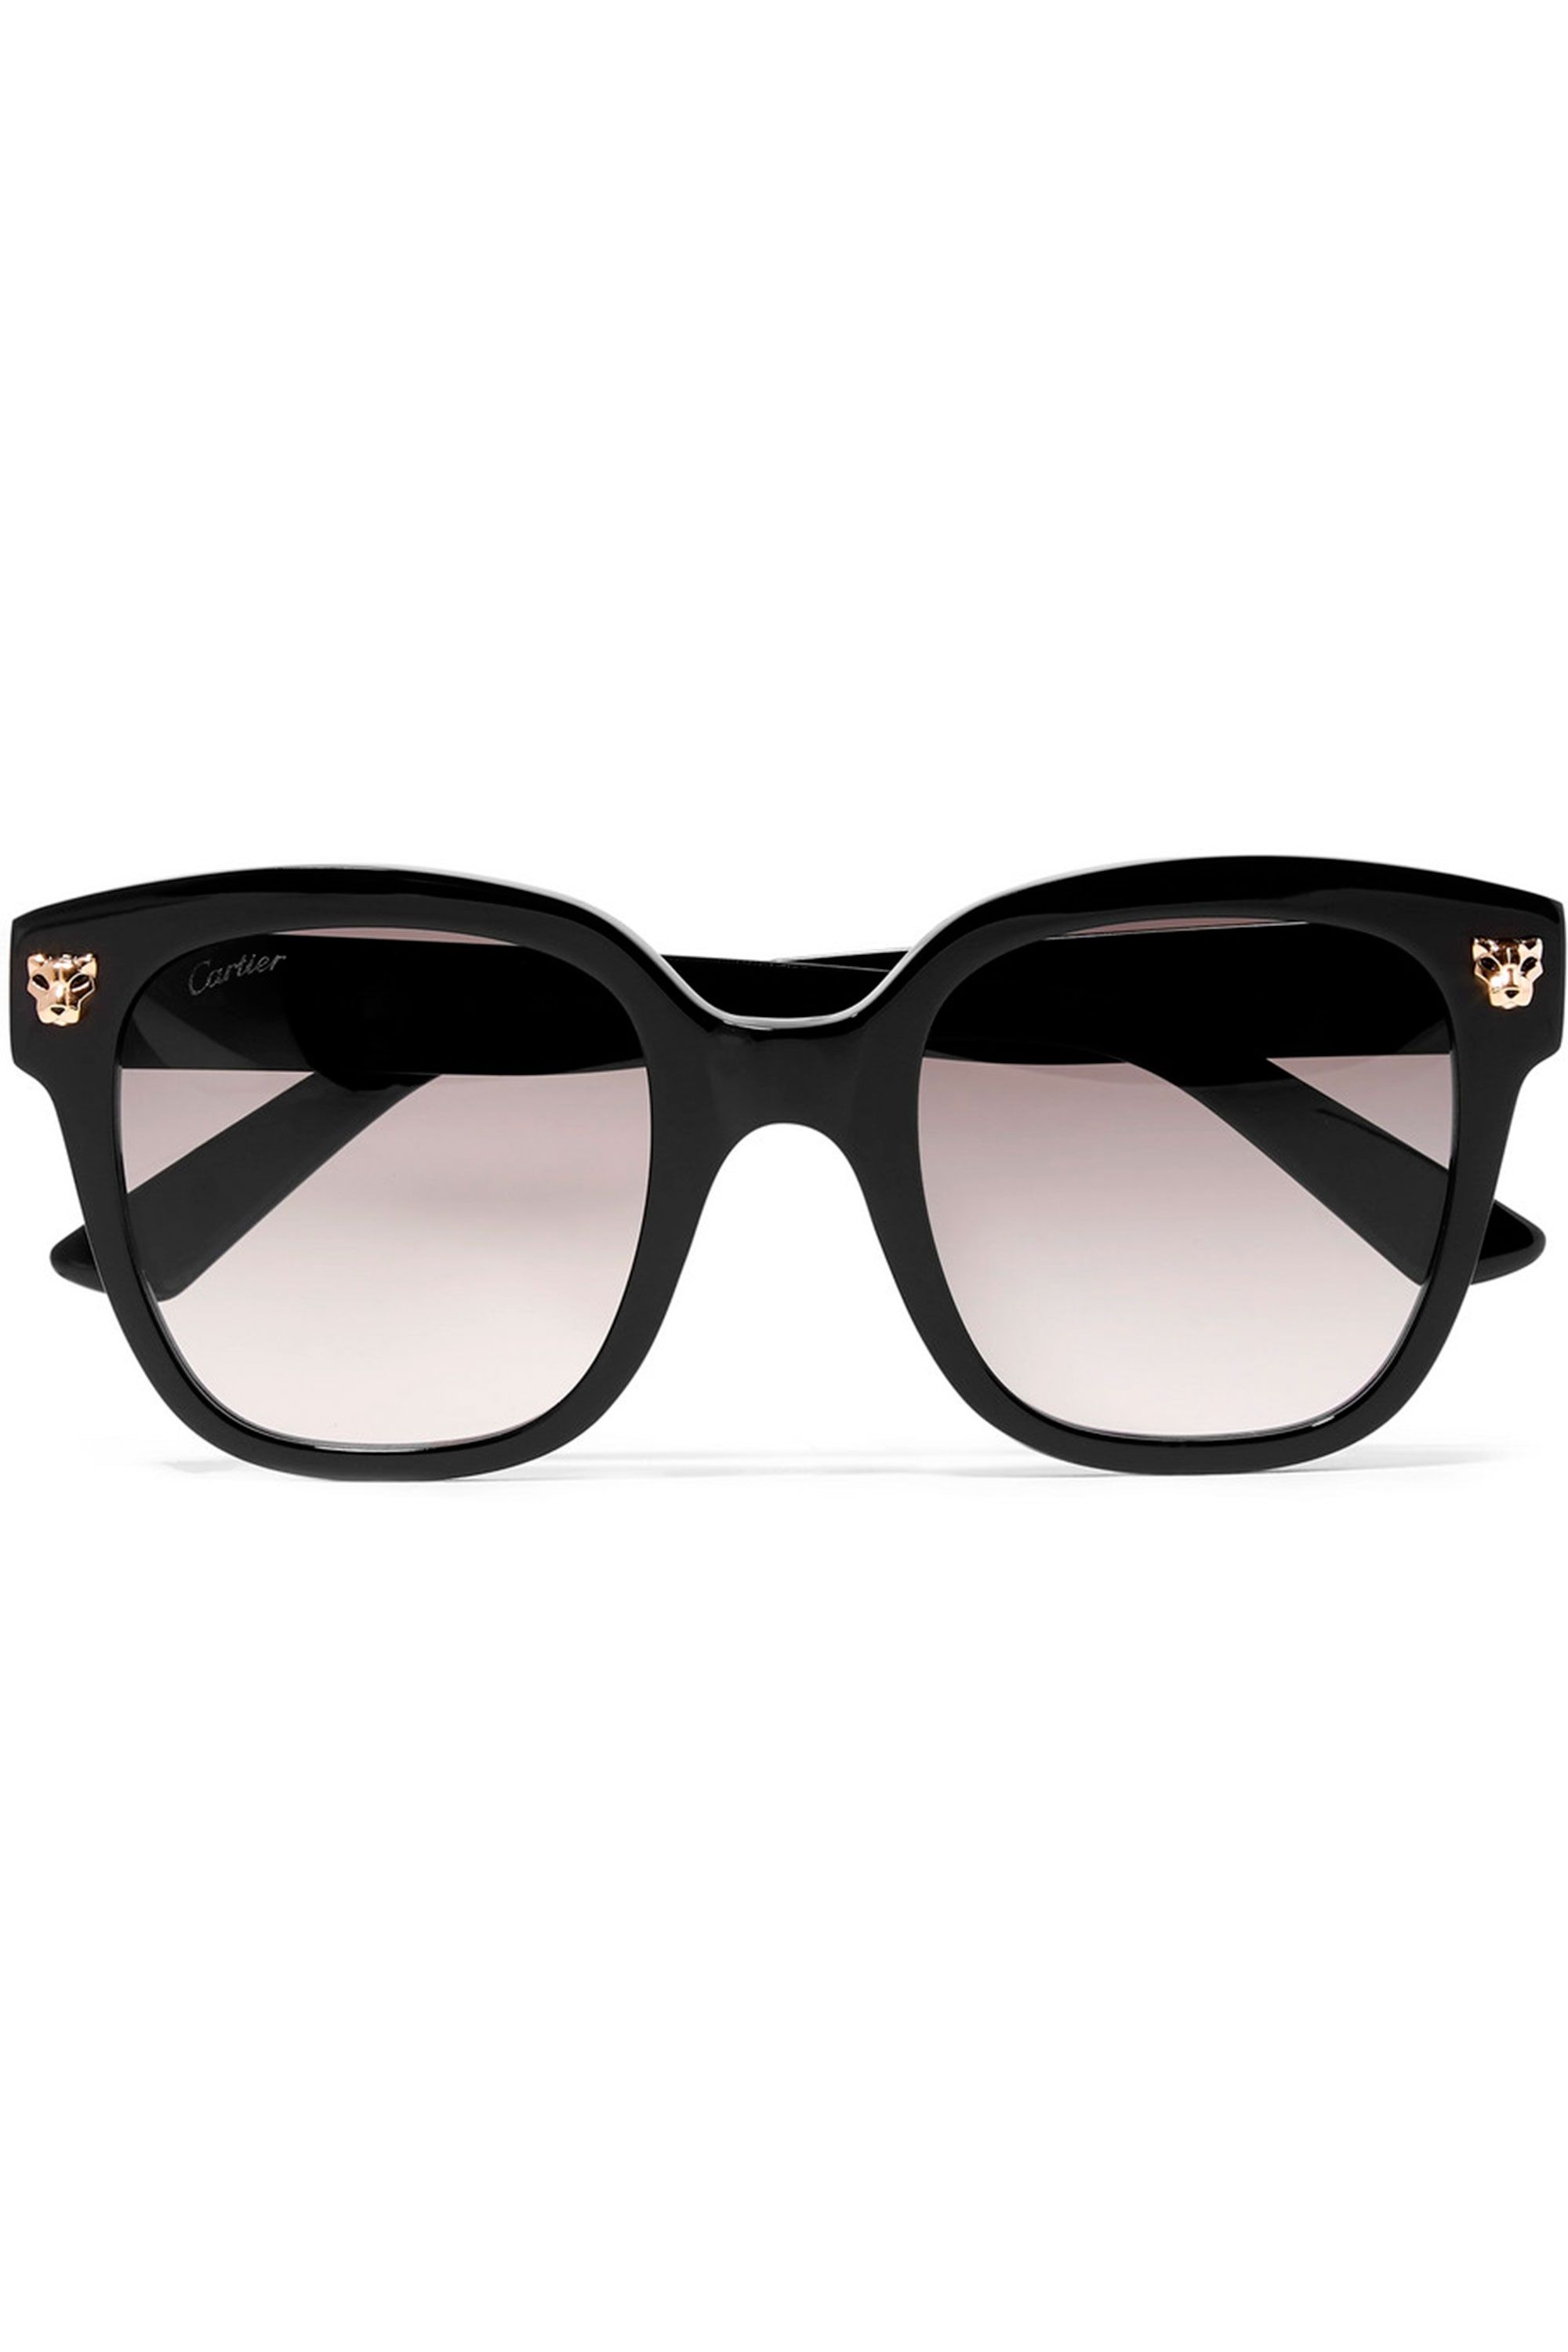 cartier-sunglasses-1561653066.jpg